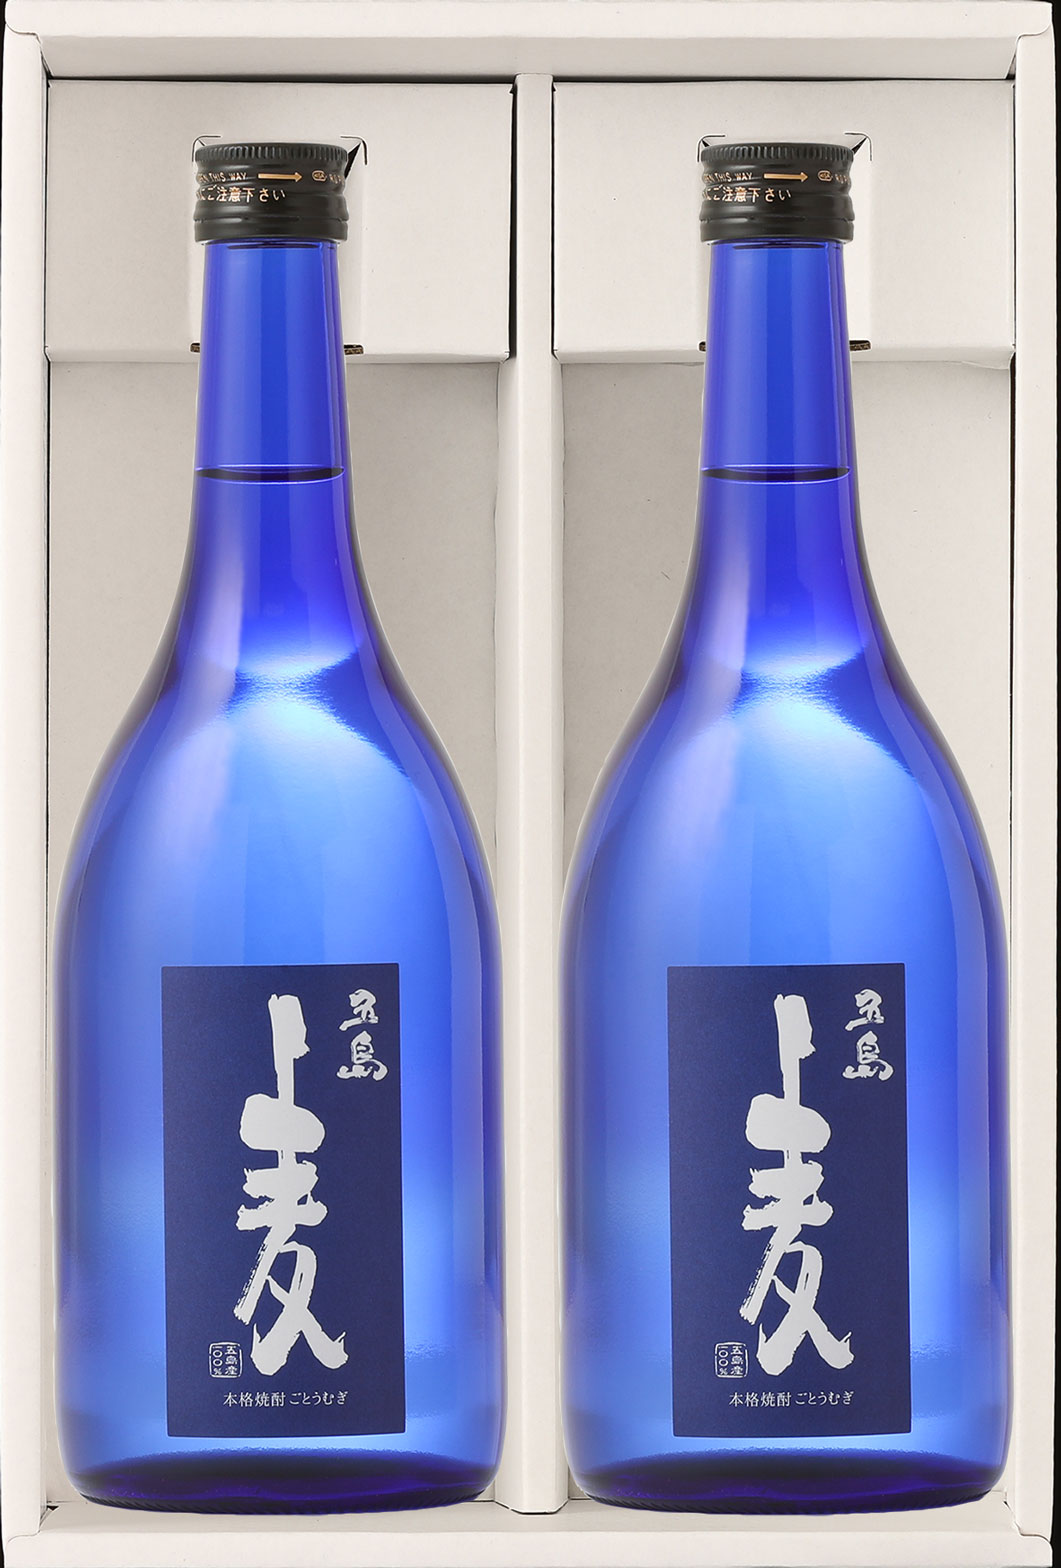 五島列島酒造 － 長崎 五島列島の原料を使用した本格焼酎の製造